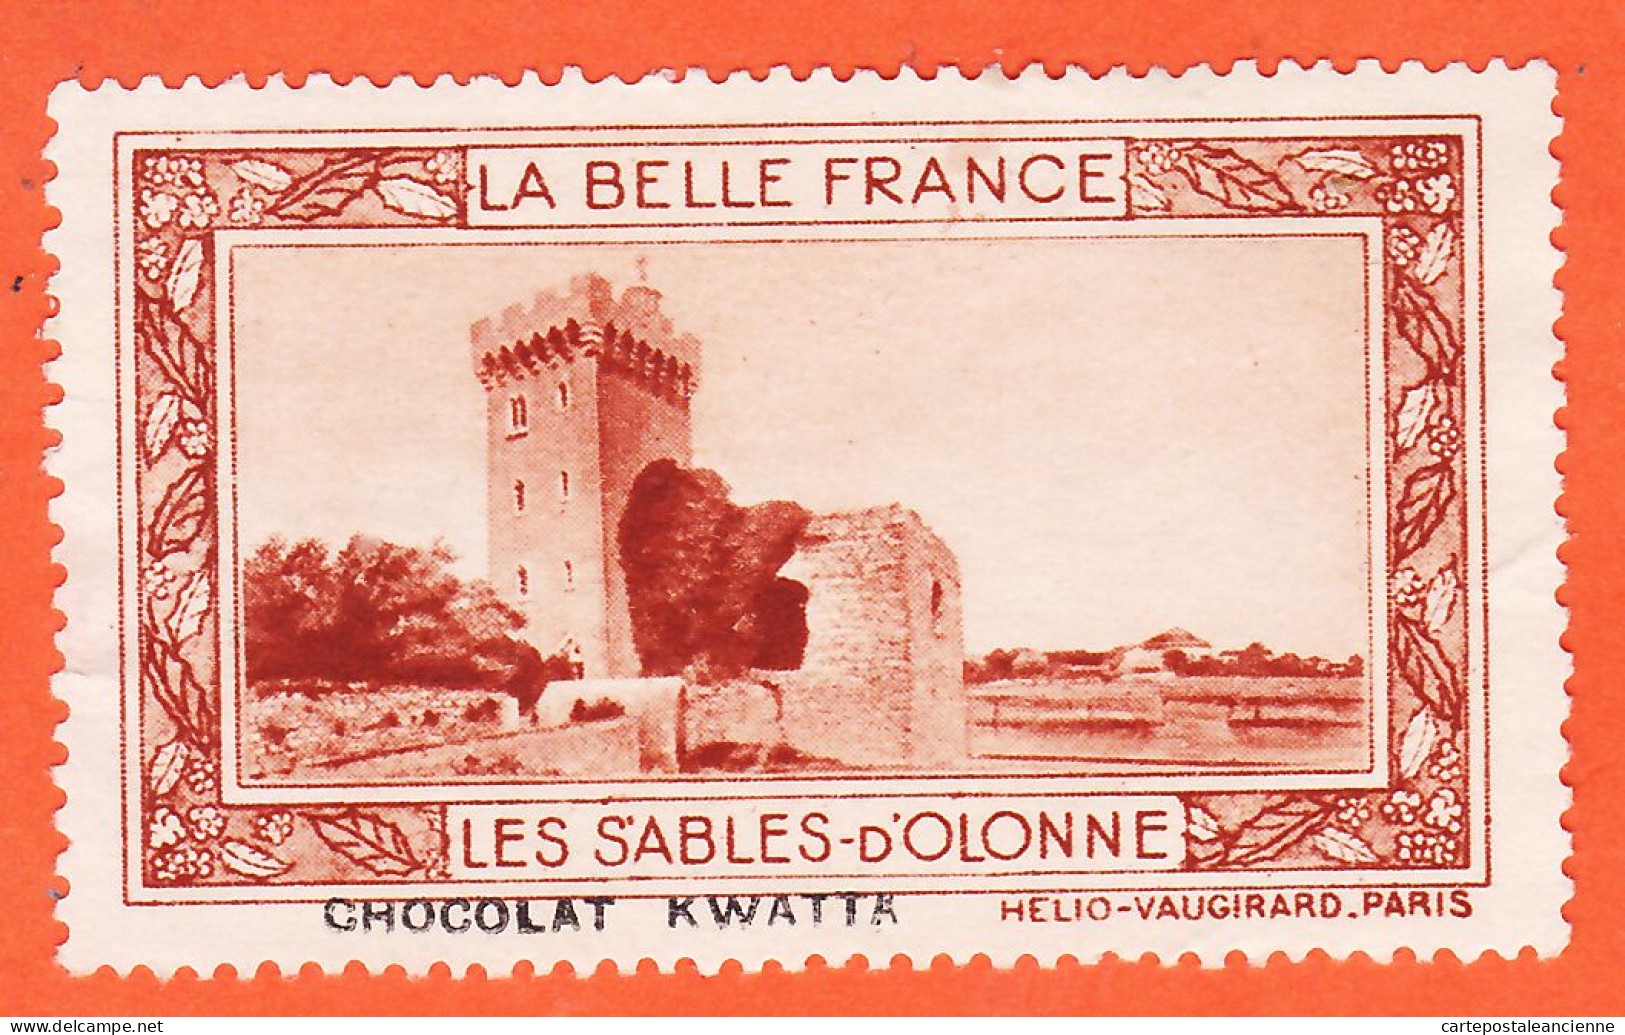 00166 ● LES SABLES-OLONNES 85-Vendée Pub Chocolat KWATTA Vignette Collection BELLE FRANCE HELIO-VAUGIRARD Erinnophilie - Toerisme (Vignetten)